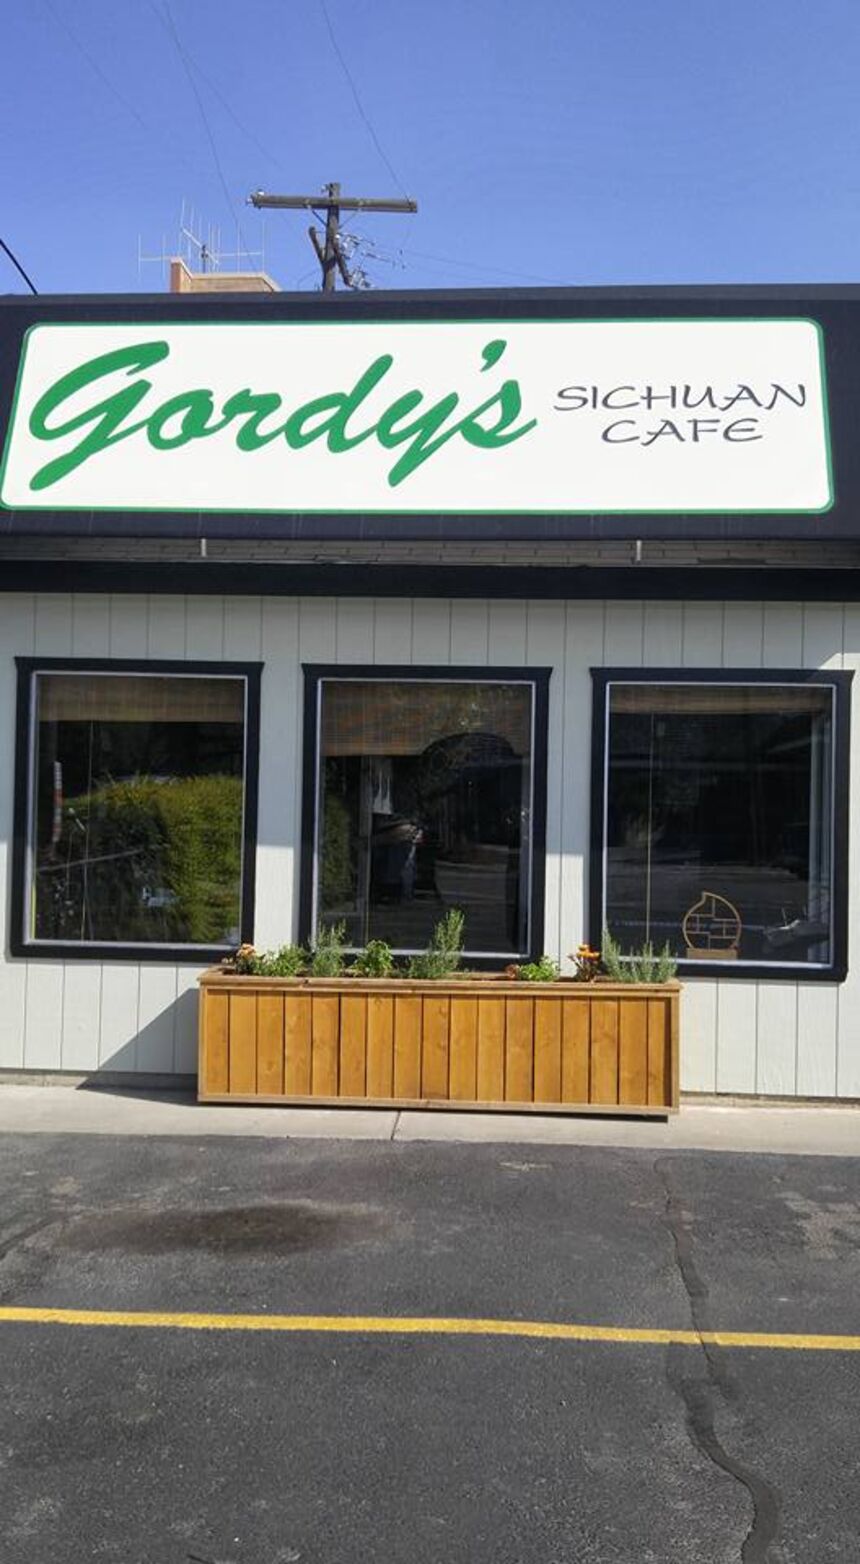 Gordy's Sichuan Café